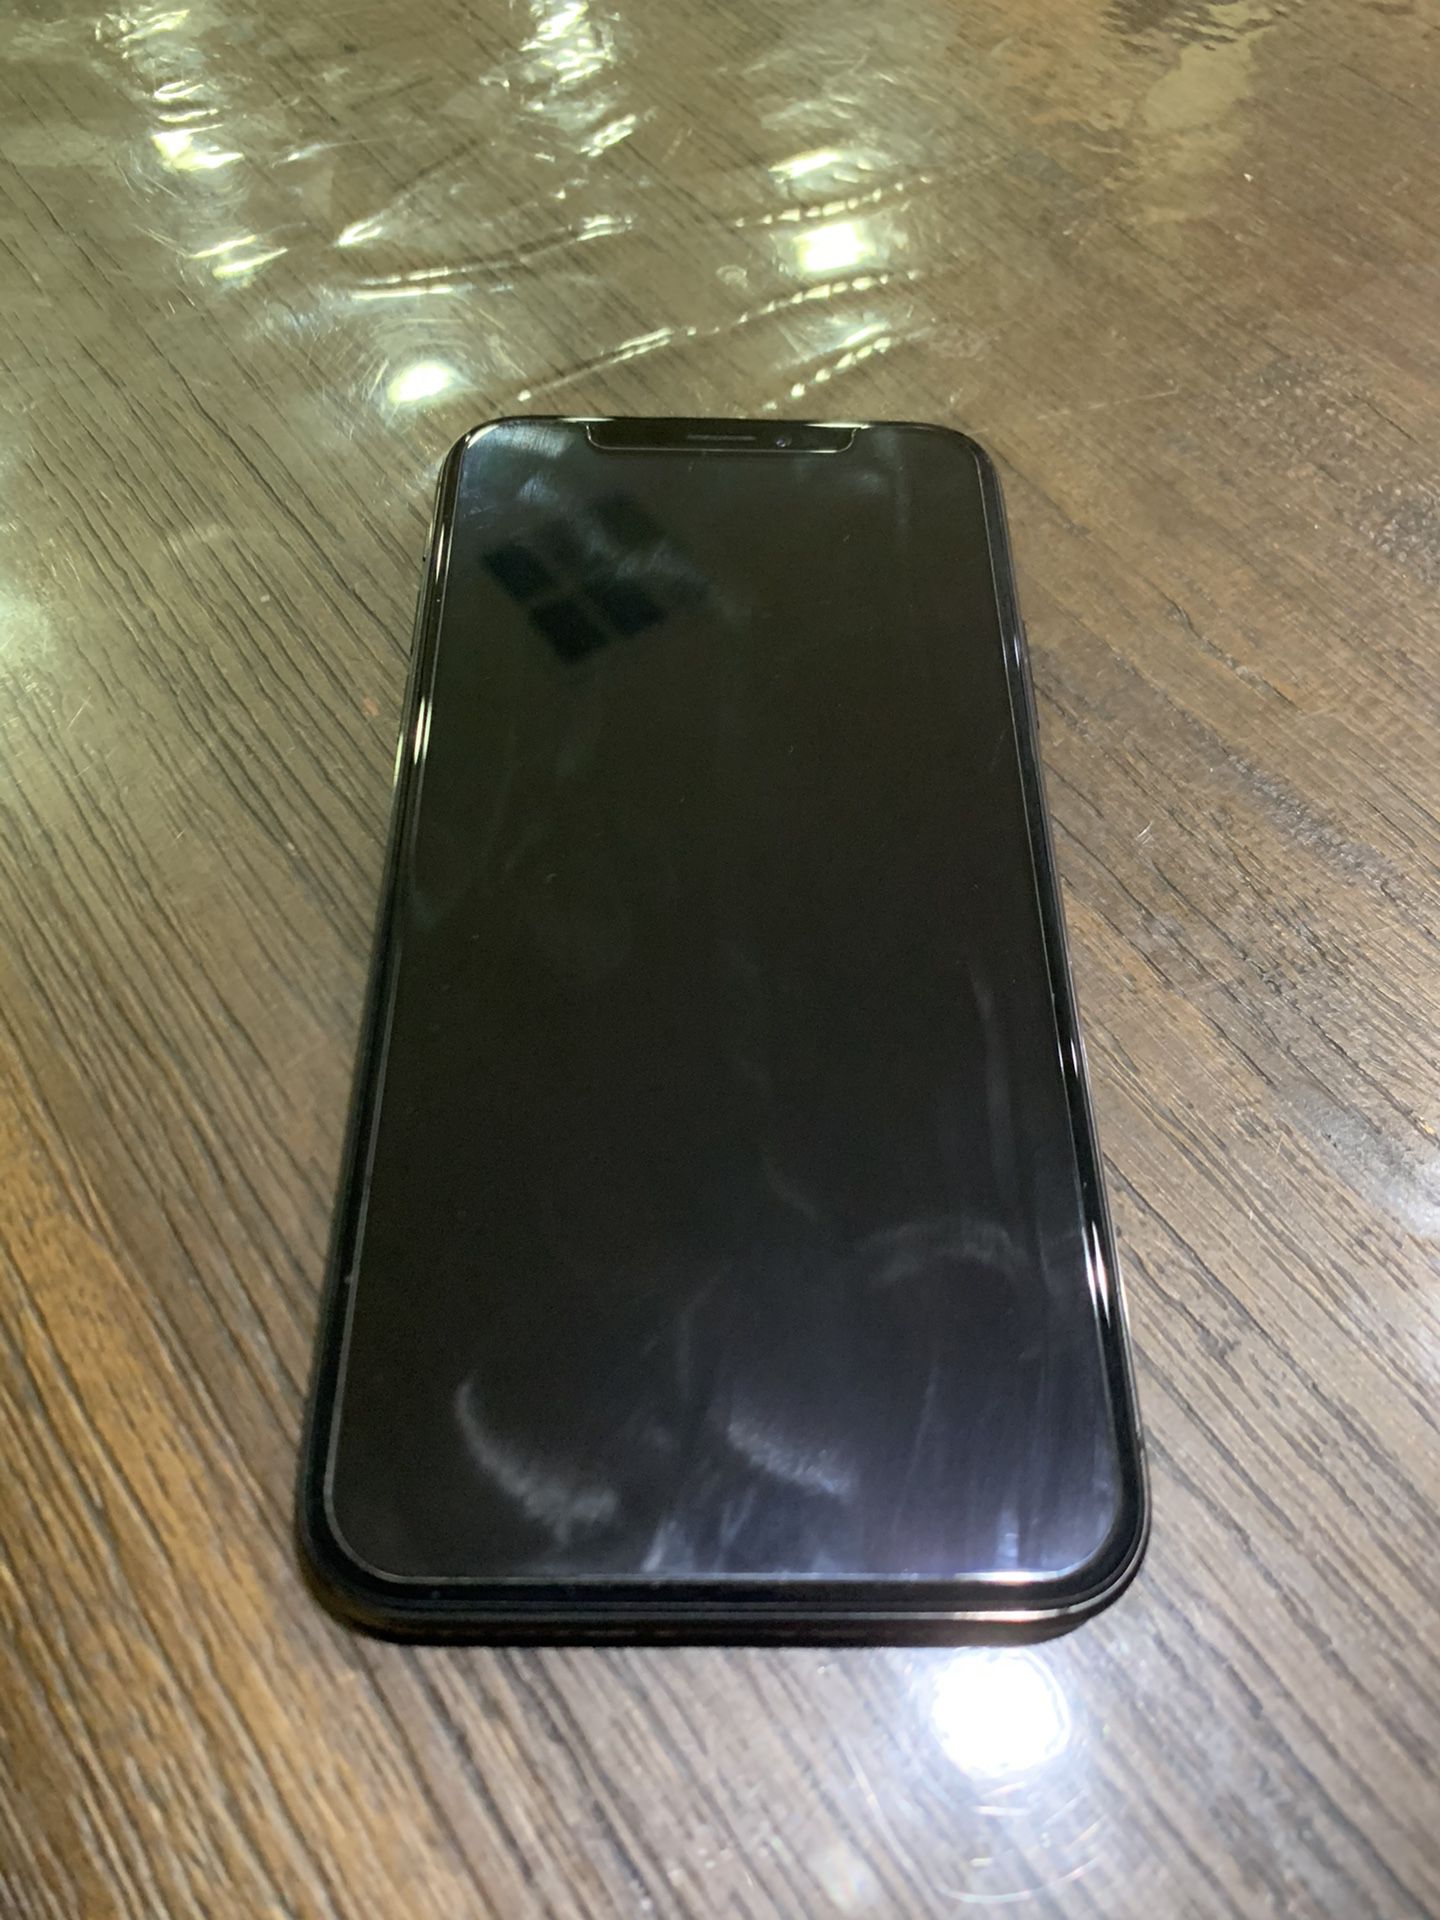 Iphone X 256 Gb Factory Unlocked